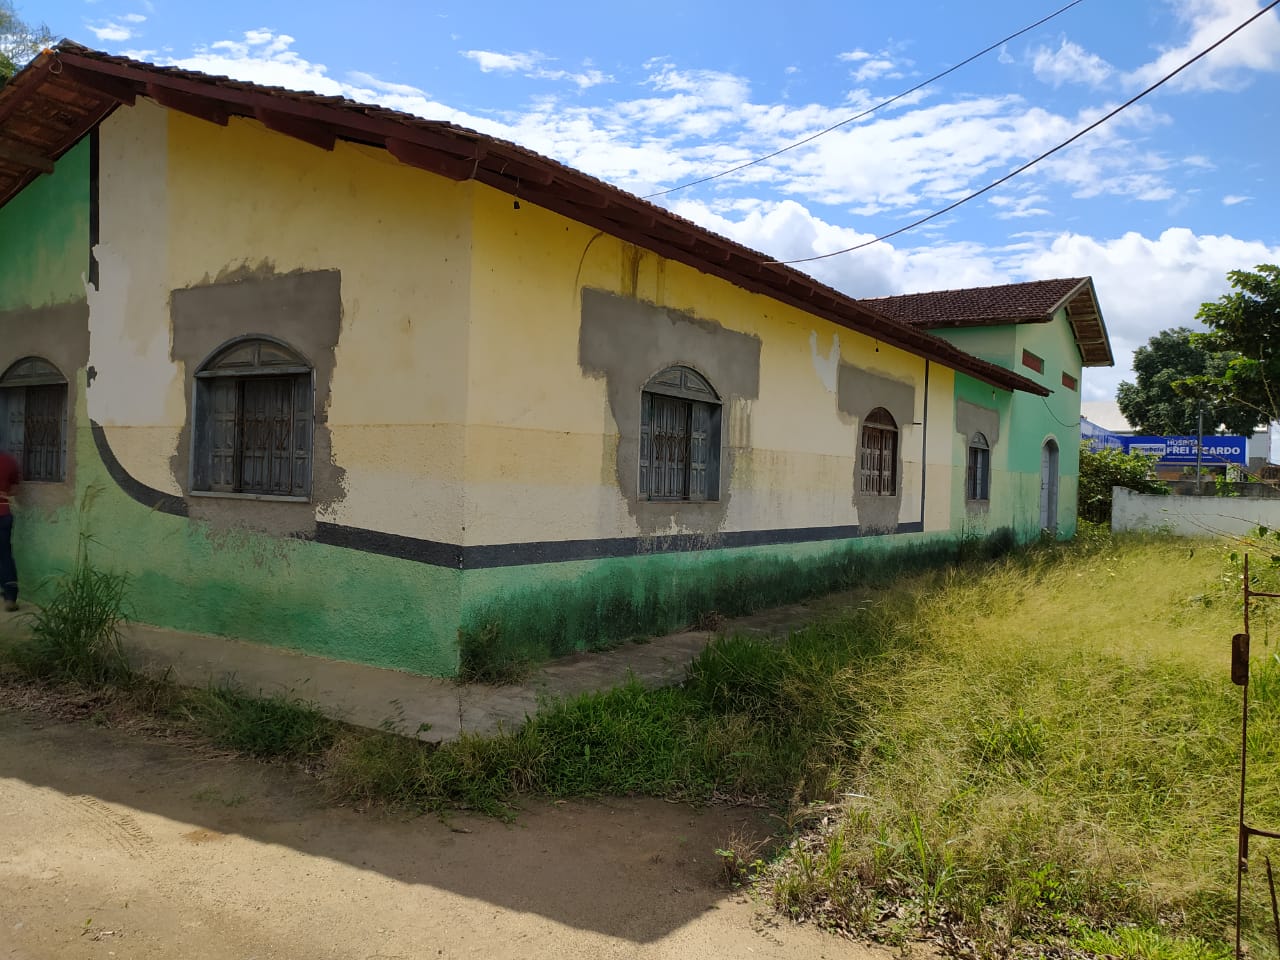 Novo local onde os idosos sero abrigados fica na antiga escola agrcola da cidade, localizado ao lado do Hospital Frei Ricardo. (Foto: Divulgao)